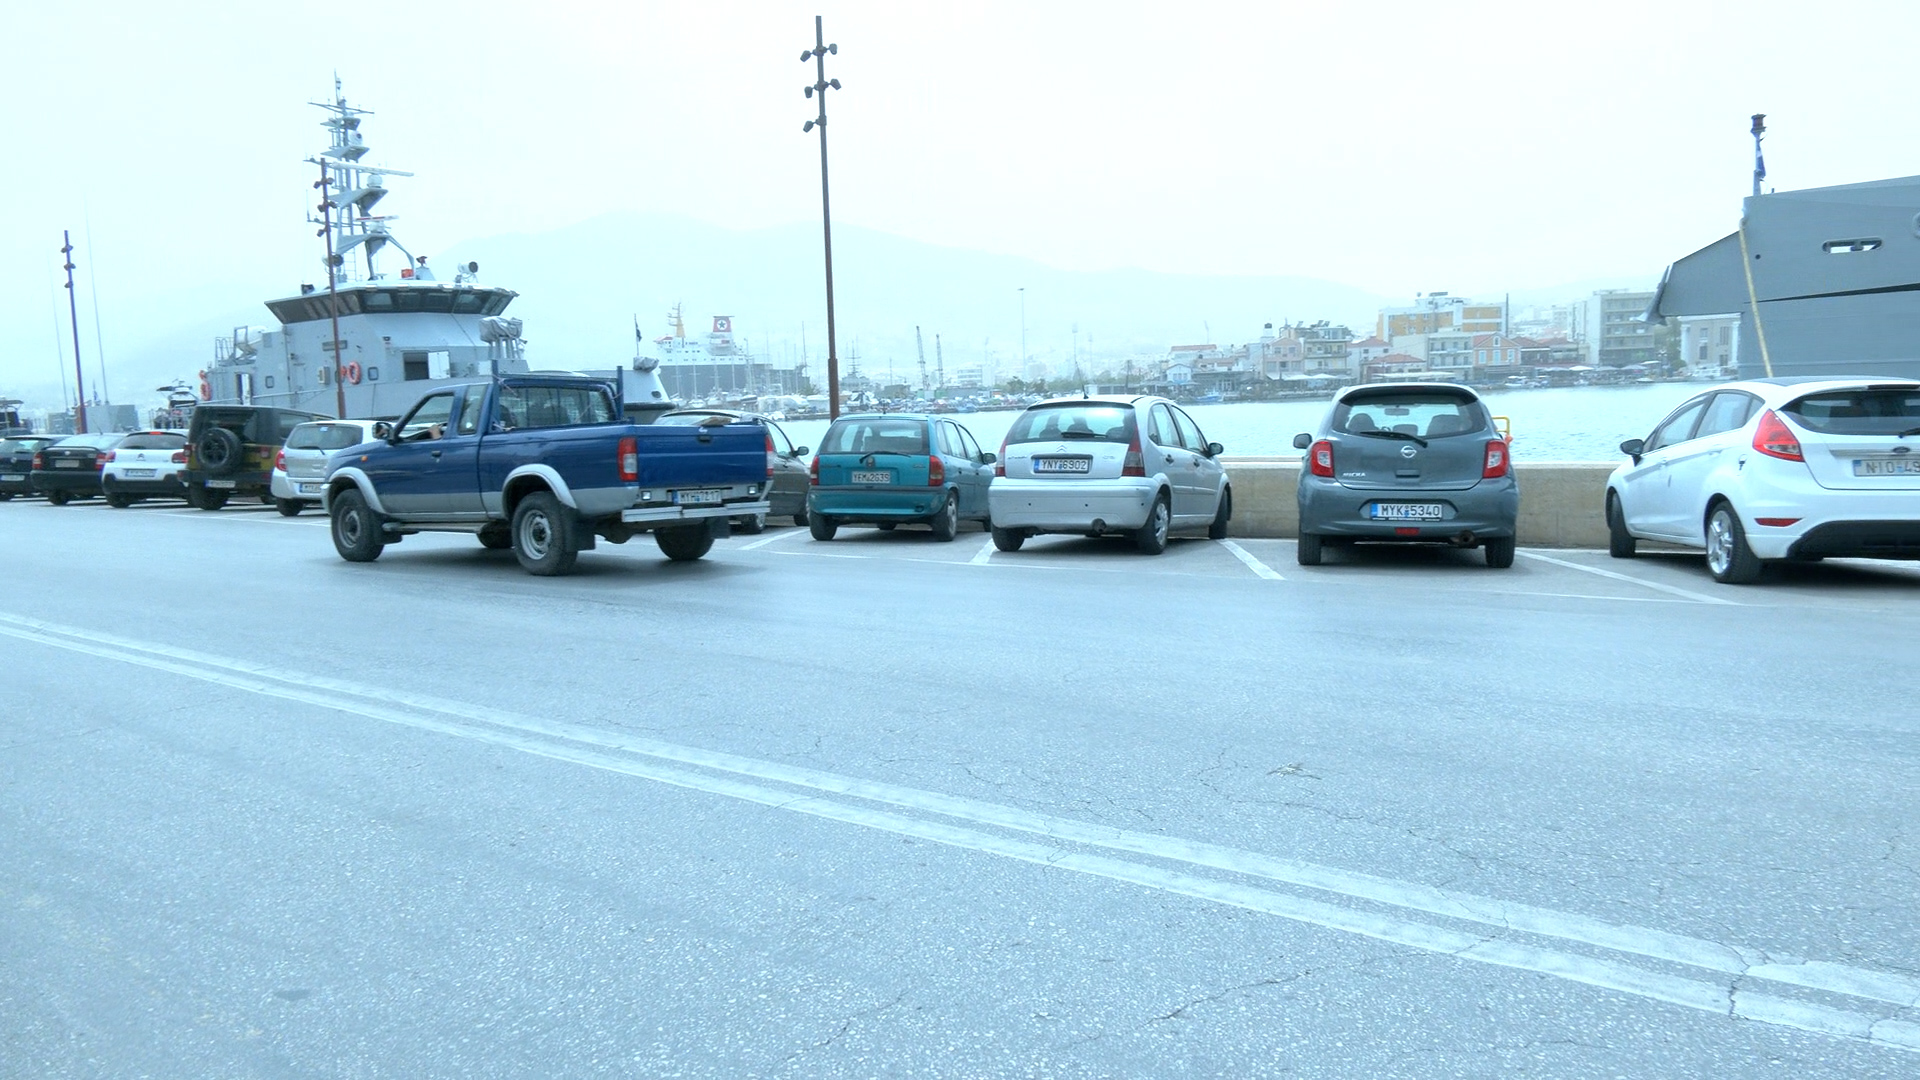 Ζητείται λύση για το παρκάρισμα στη Μυτιλήνη